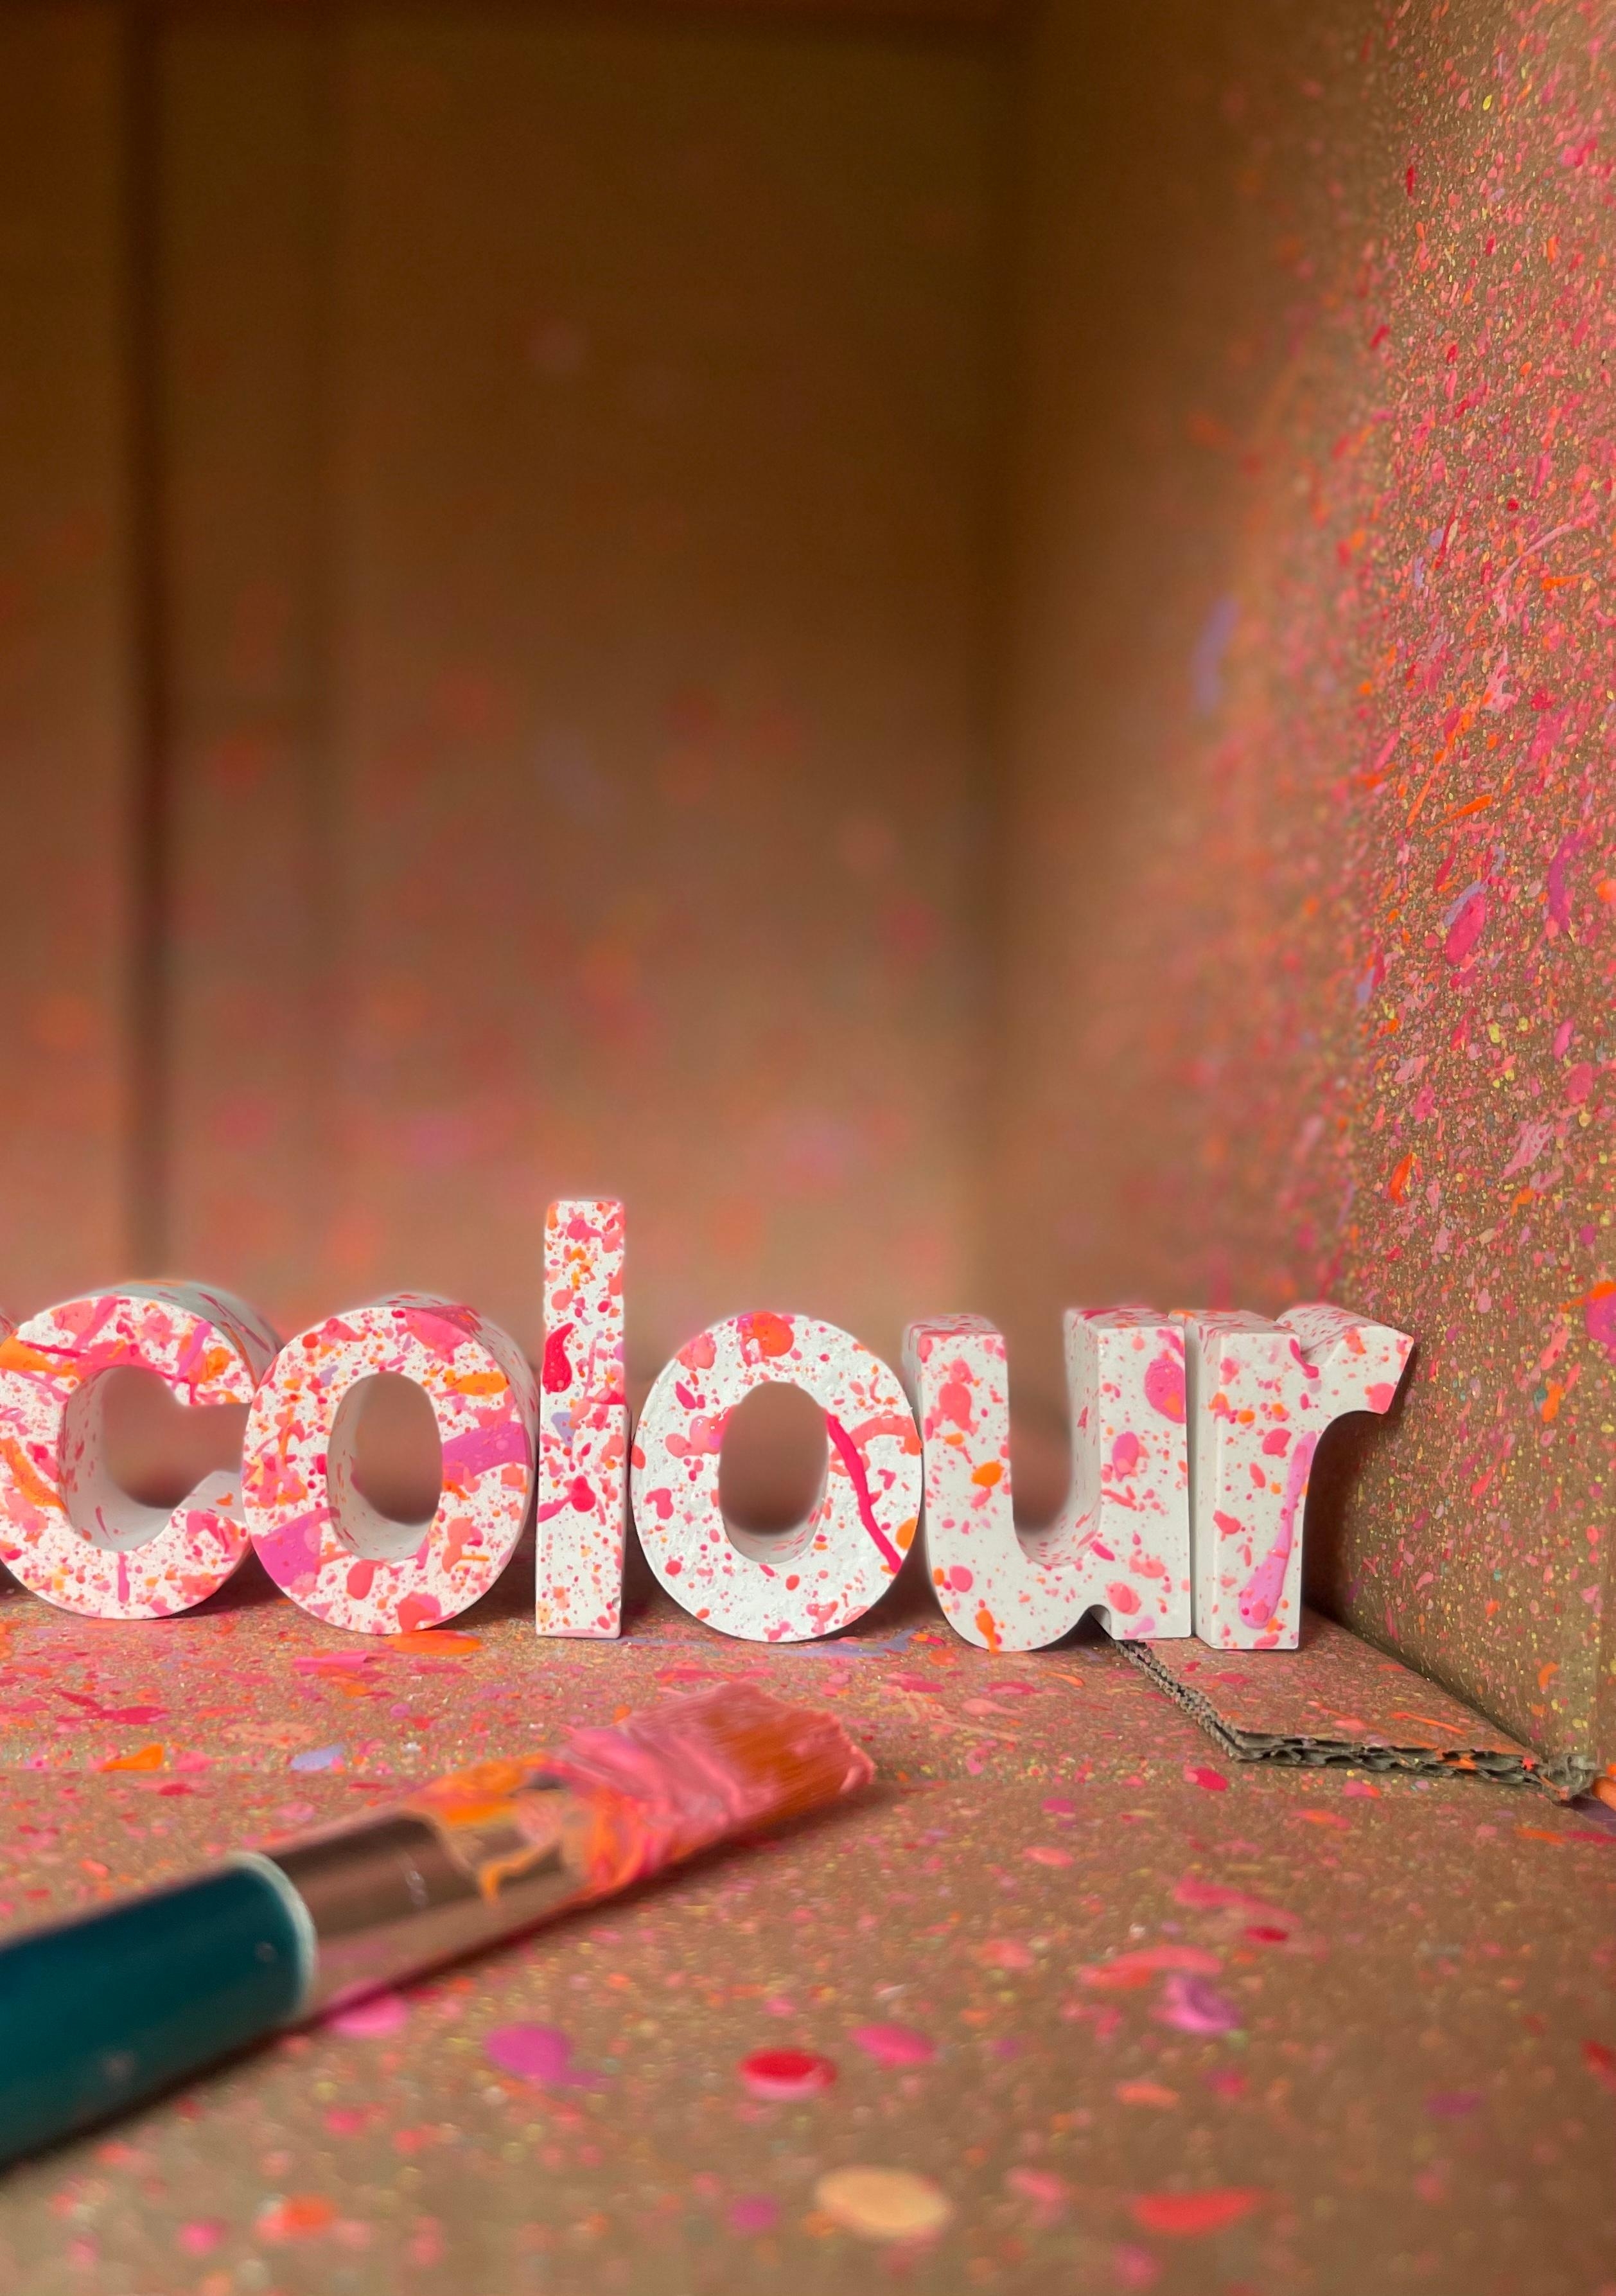 #farbverrückt? Aber sowas von!
#colouraddicted #farbenfrohebuchstaben #cheers2colour